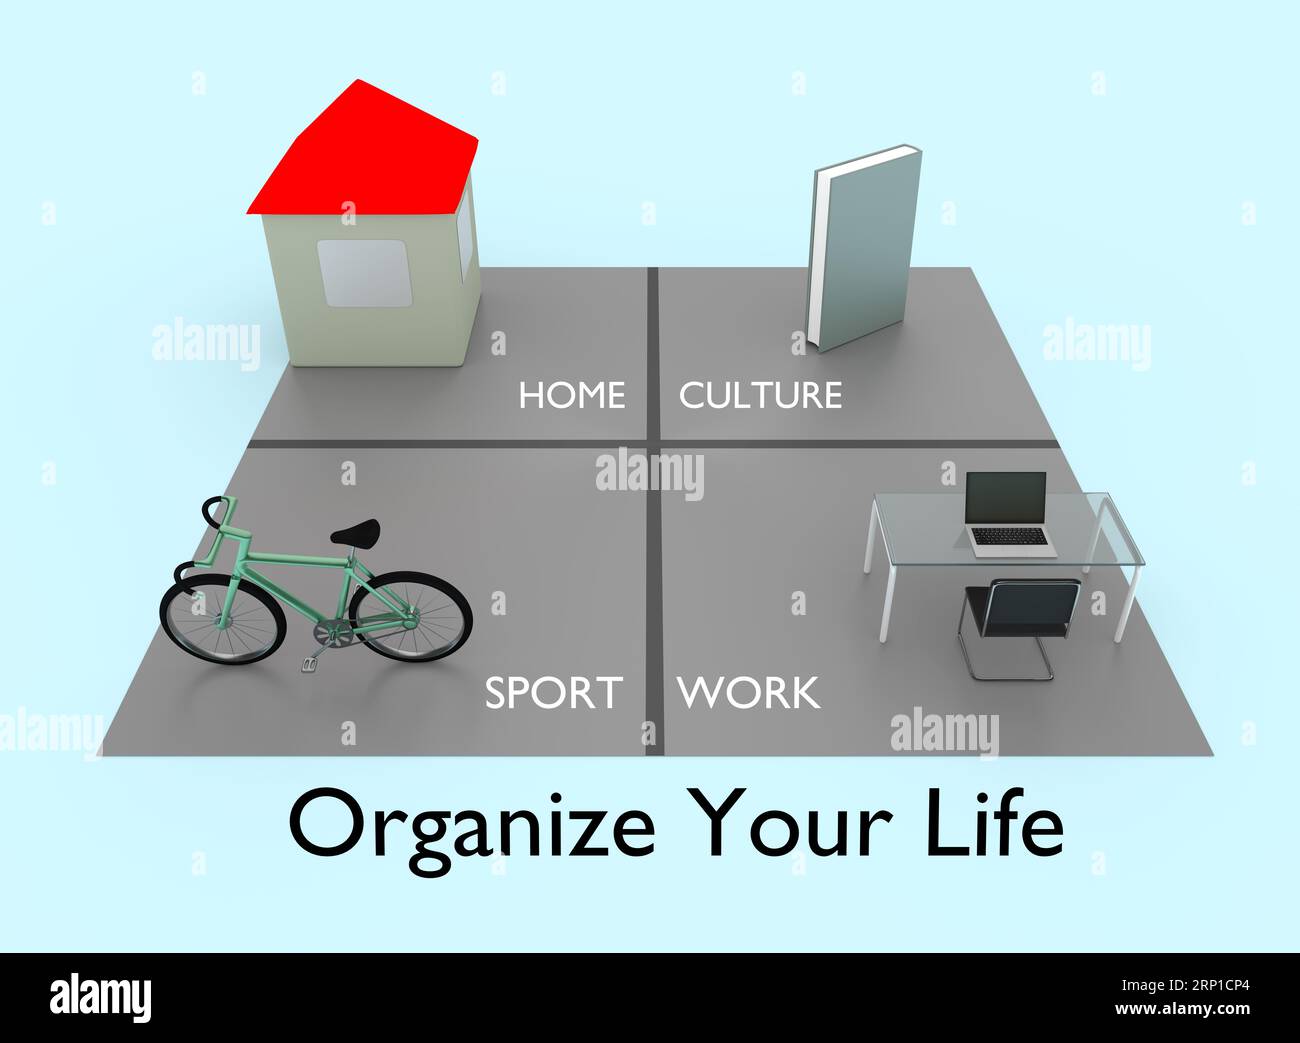 3D-Illustration einer schematischen Aufteilung der Zeitzuweisung auf Arbeit, Familie, Kultur und Sport mit dem Titel Organize Your Life. Stockfoto